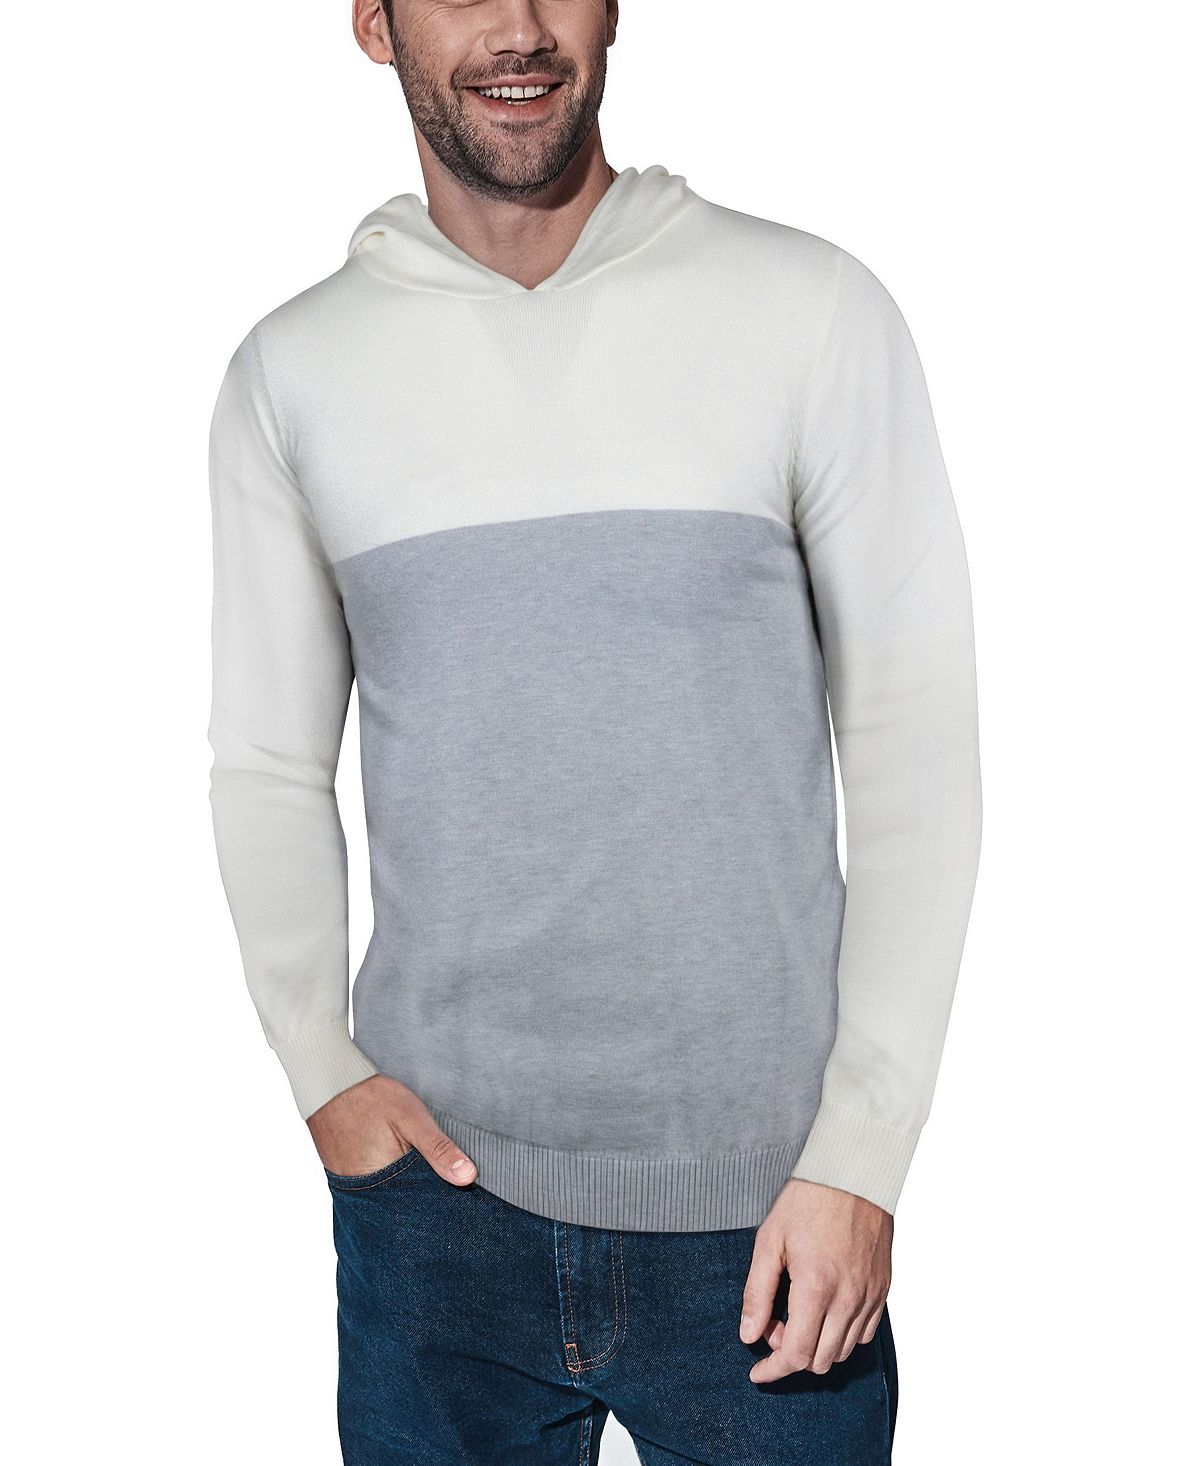 Мужской базовый свитер средней плотности с цветными блоками и капюшоном X-Ray, мульти